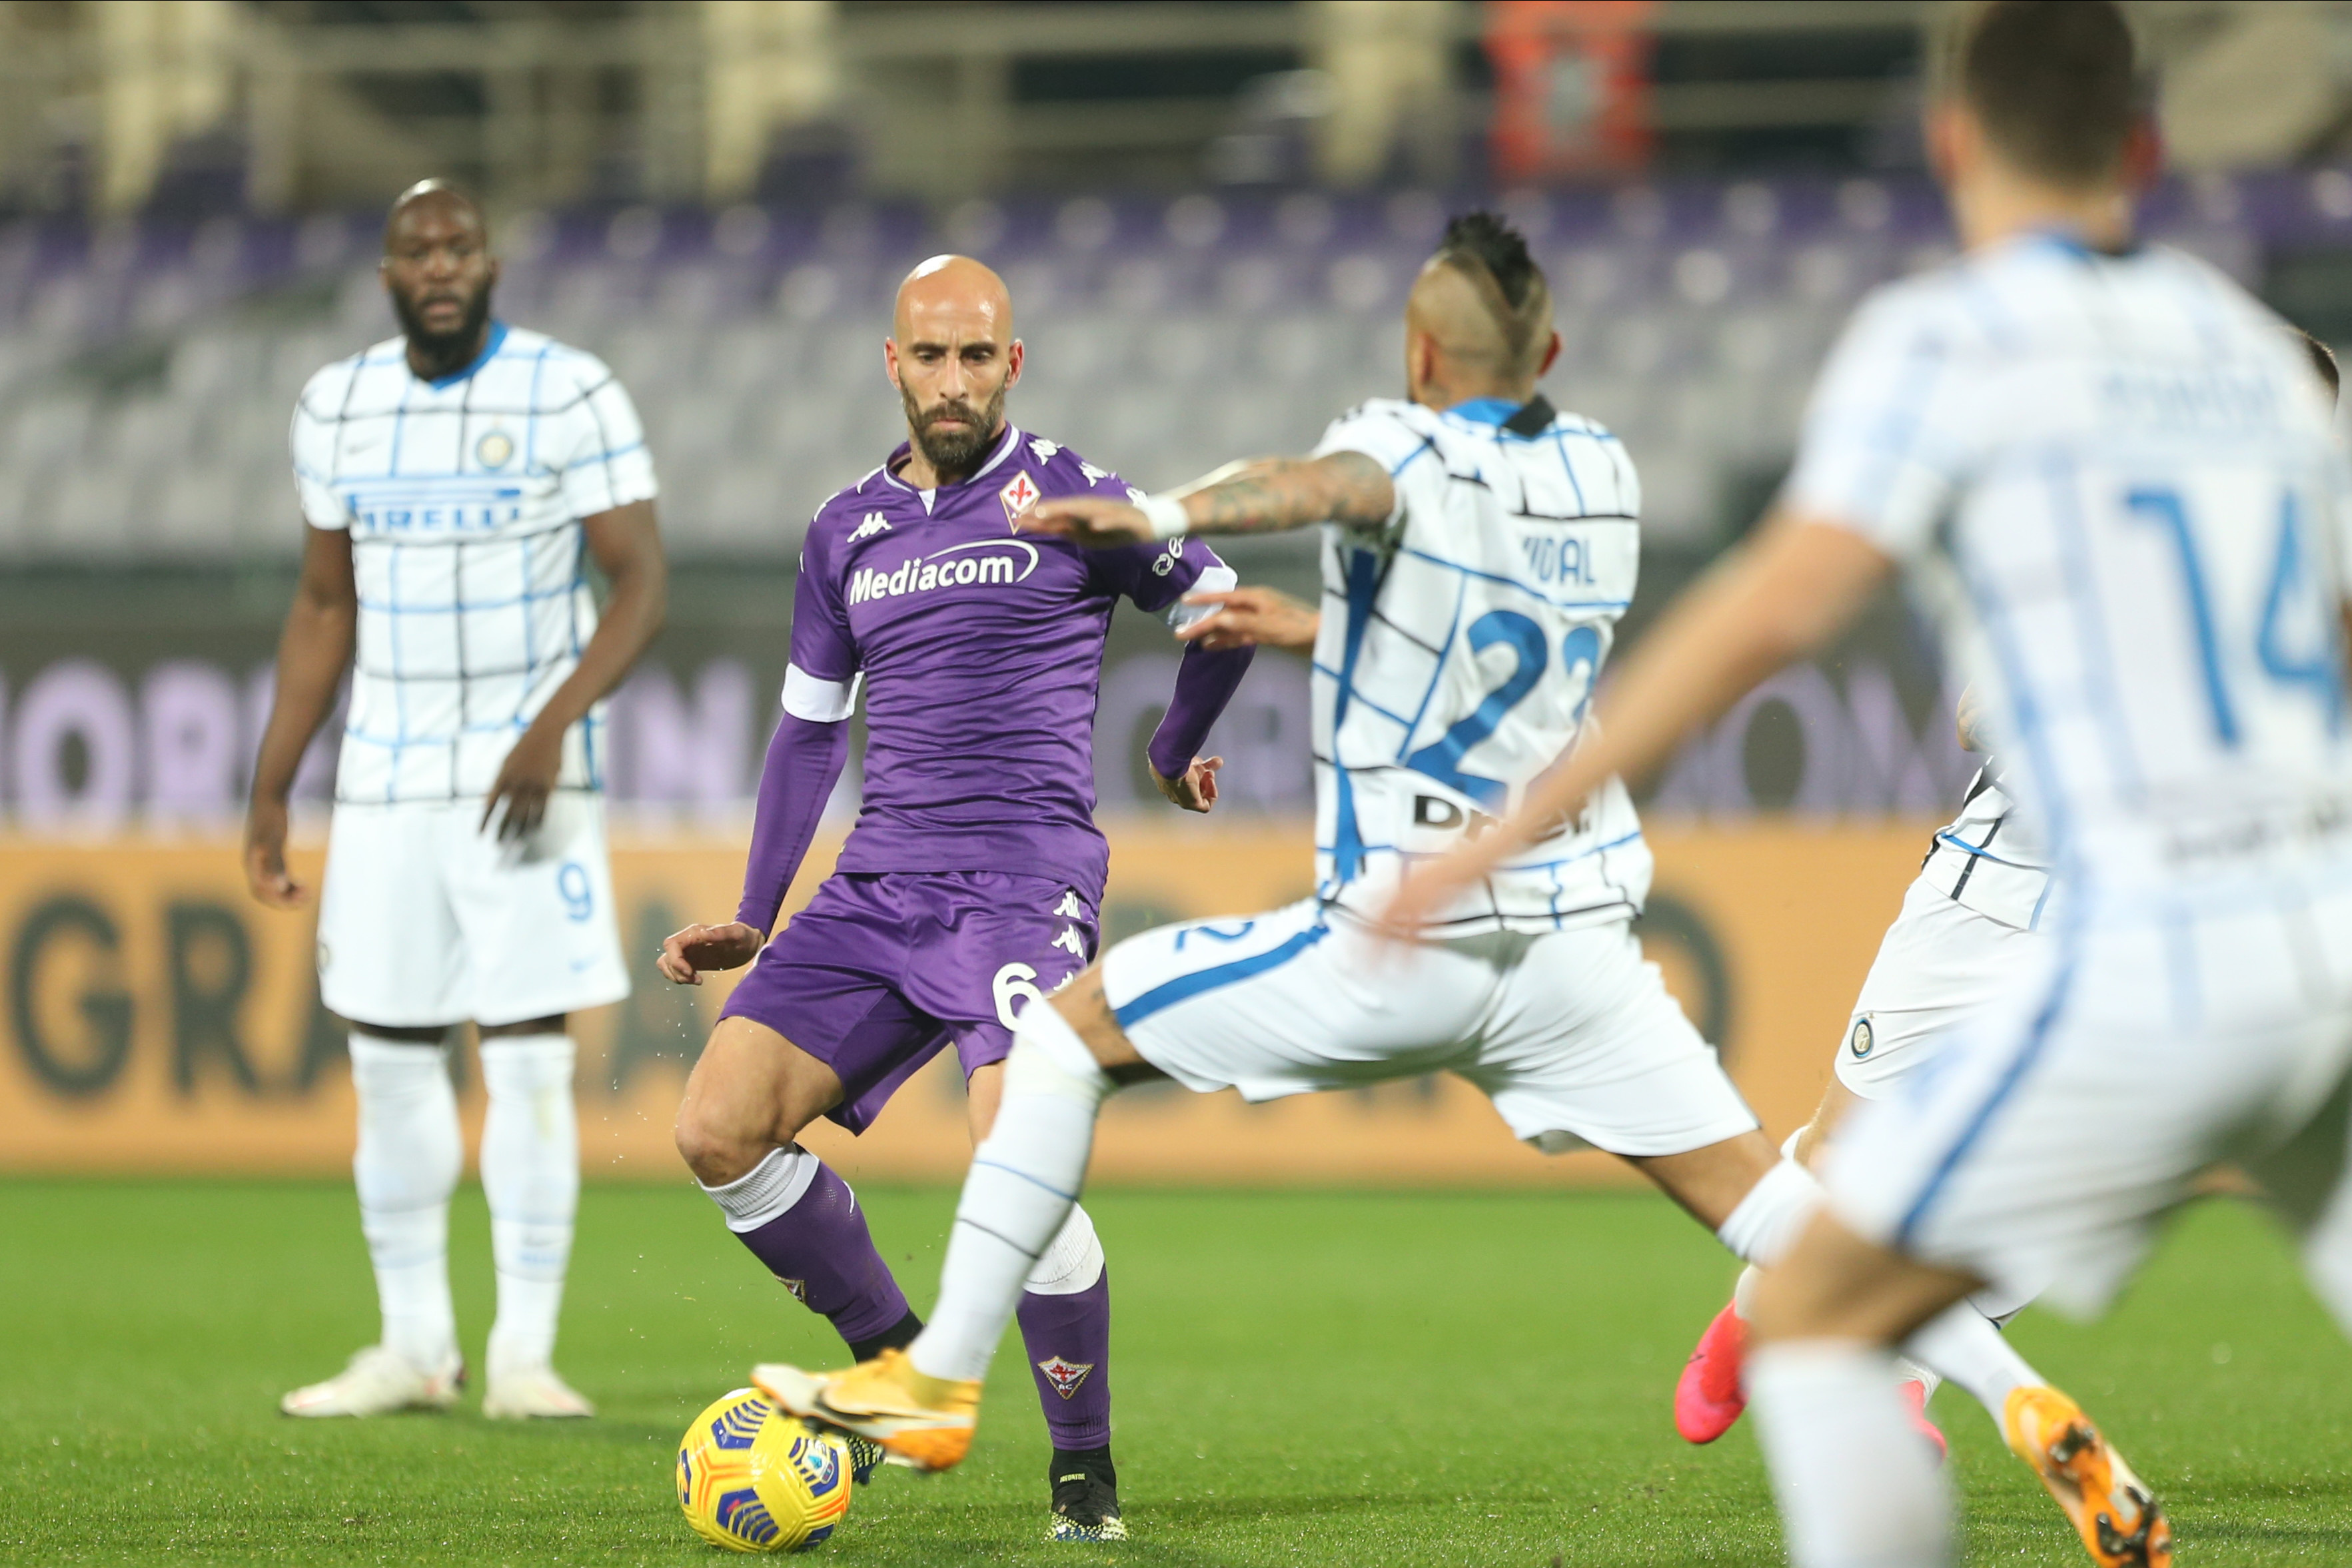 FULL TIME: Fiorentina 0-2 Inter